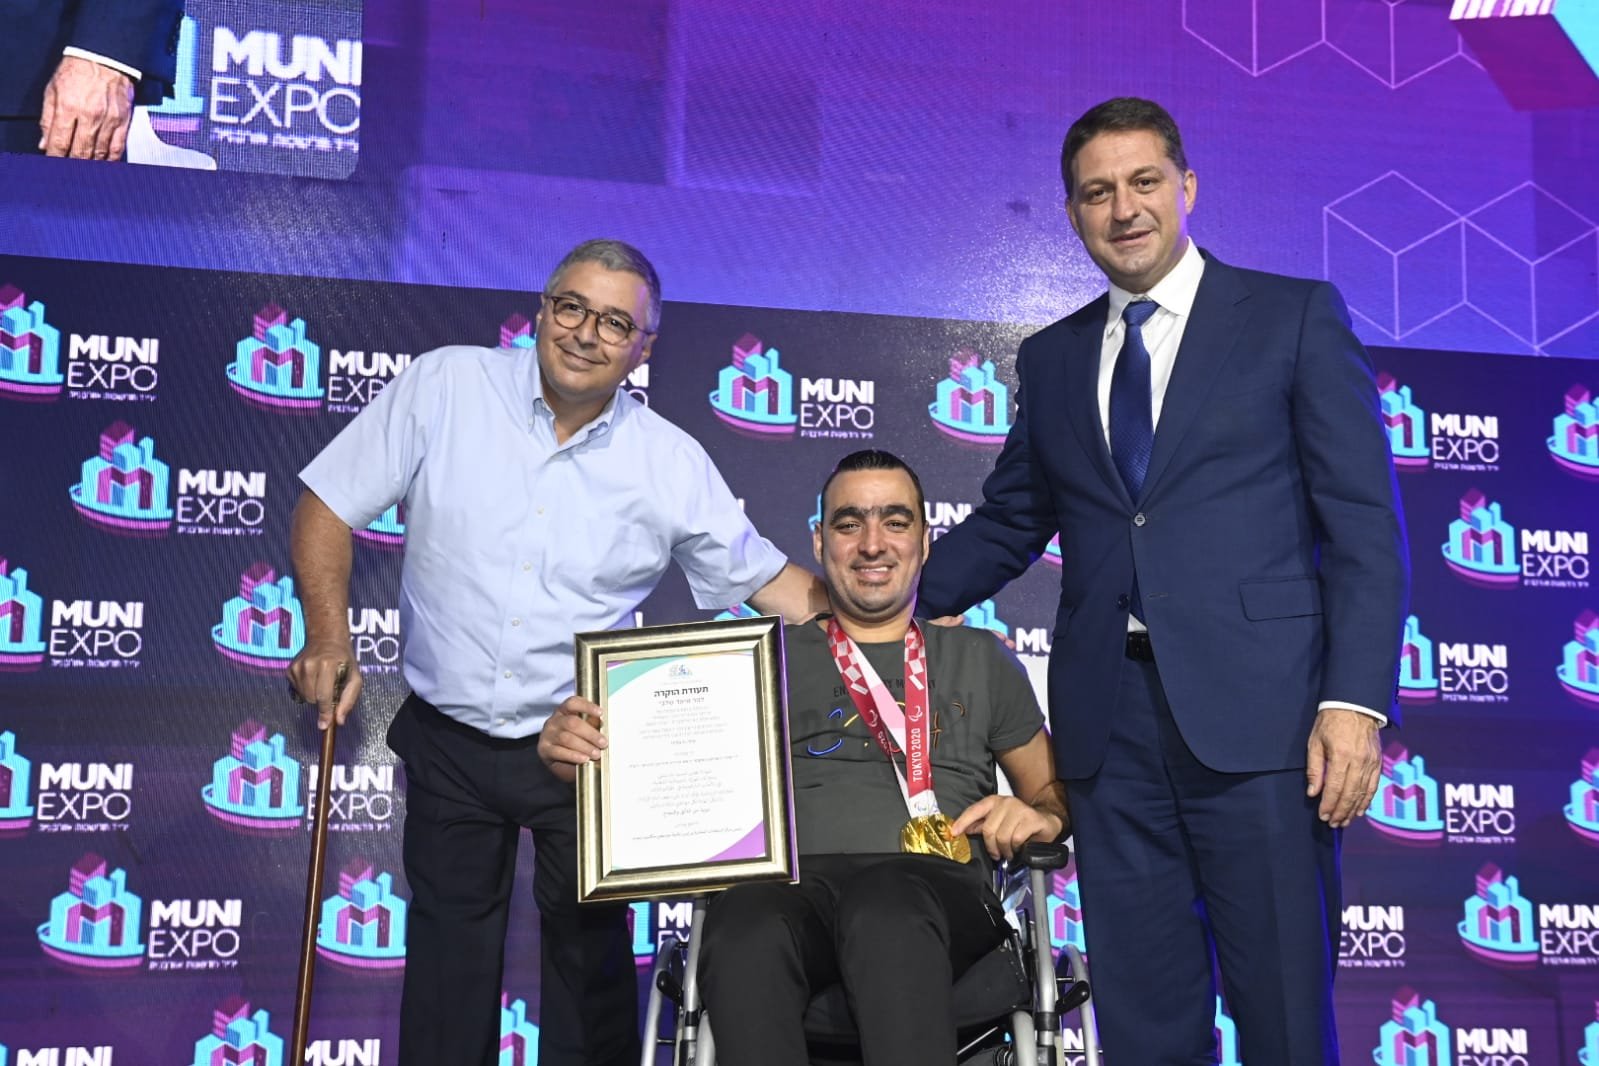 مركز السلطات المحلية يمنح شهادة تقدير للسباح الأولمبي إياد شلبي خلال مؤتمر "موني إكسبو 2021" في تل أبيب-3